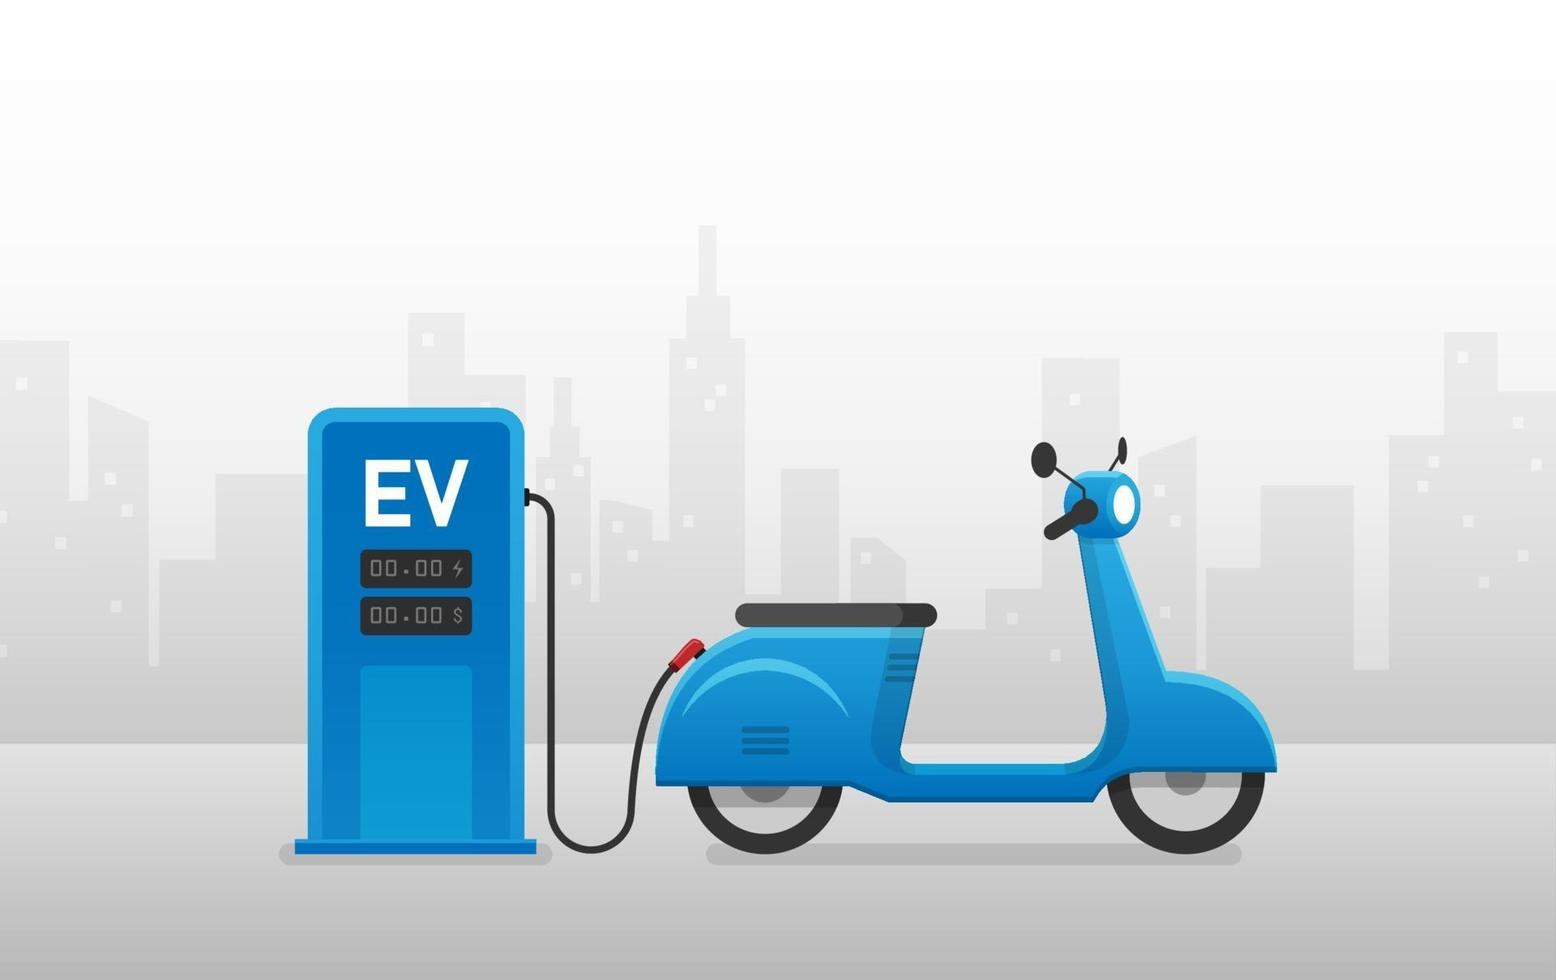 EV motorcycle charging station. Vector illustration